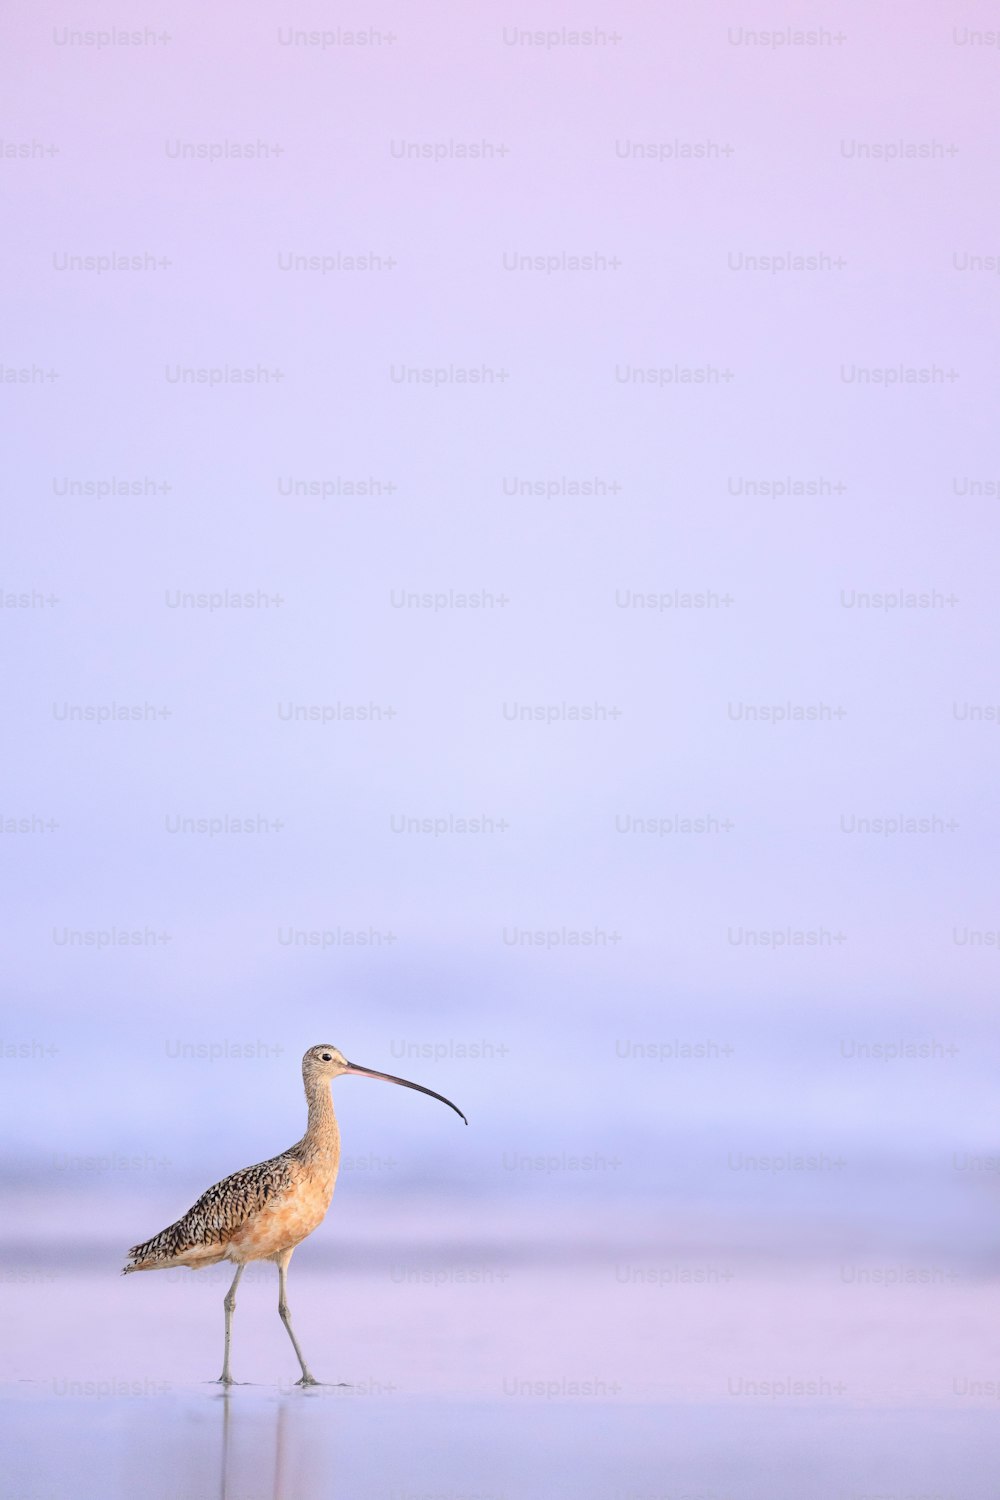 a bird with a long beak walking on a beach